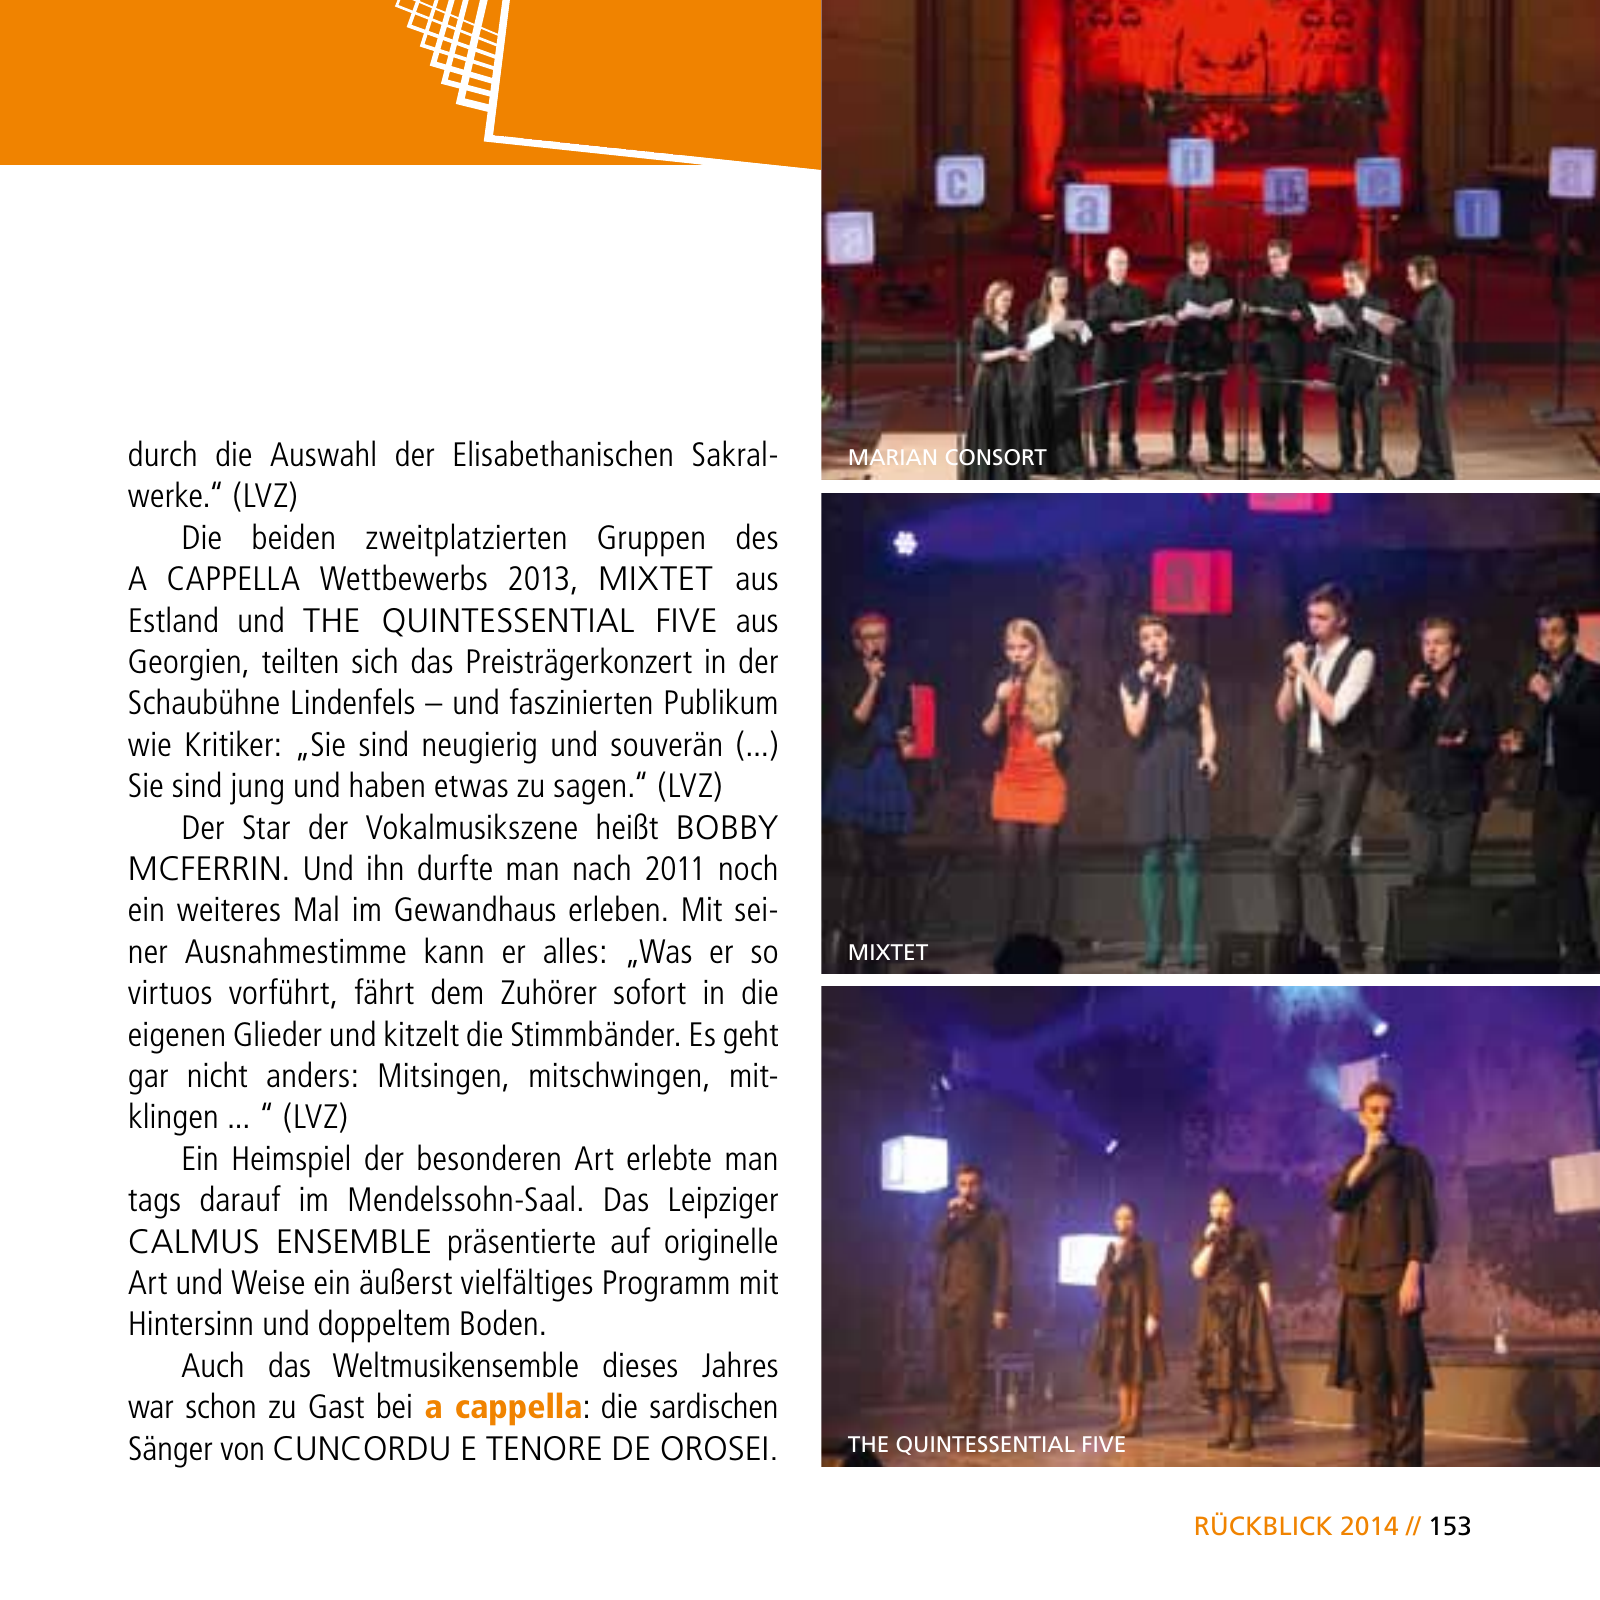 Vorschau E-Paper Festival a cappella 2015 Seite 155